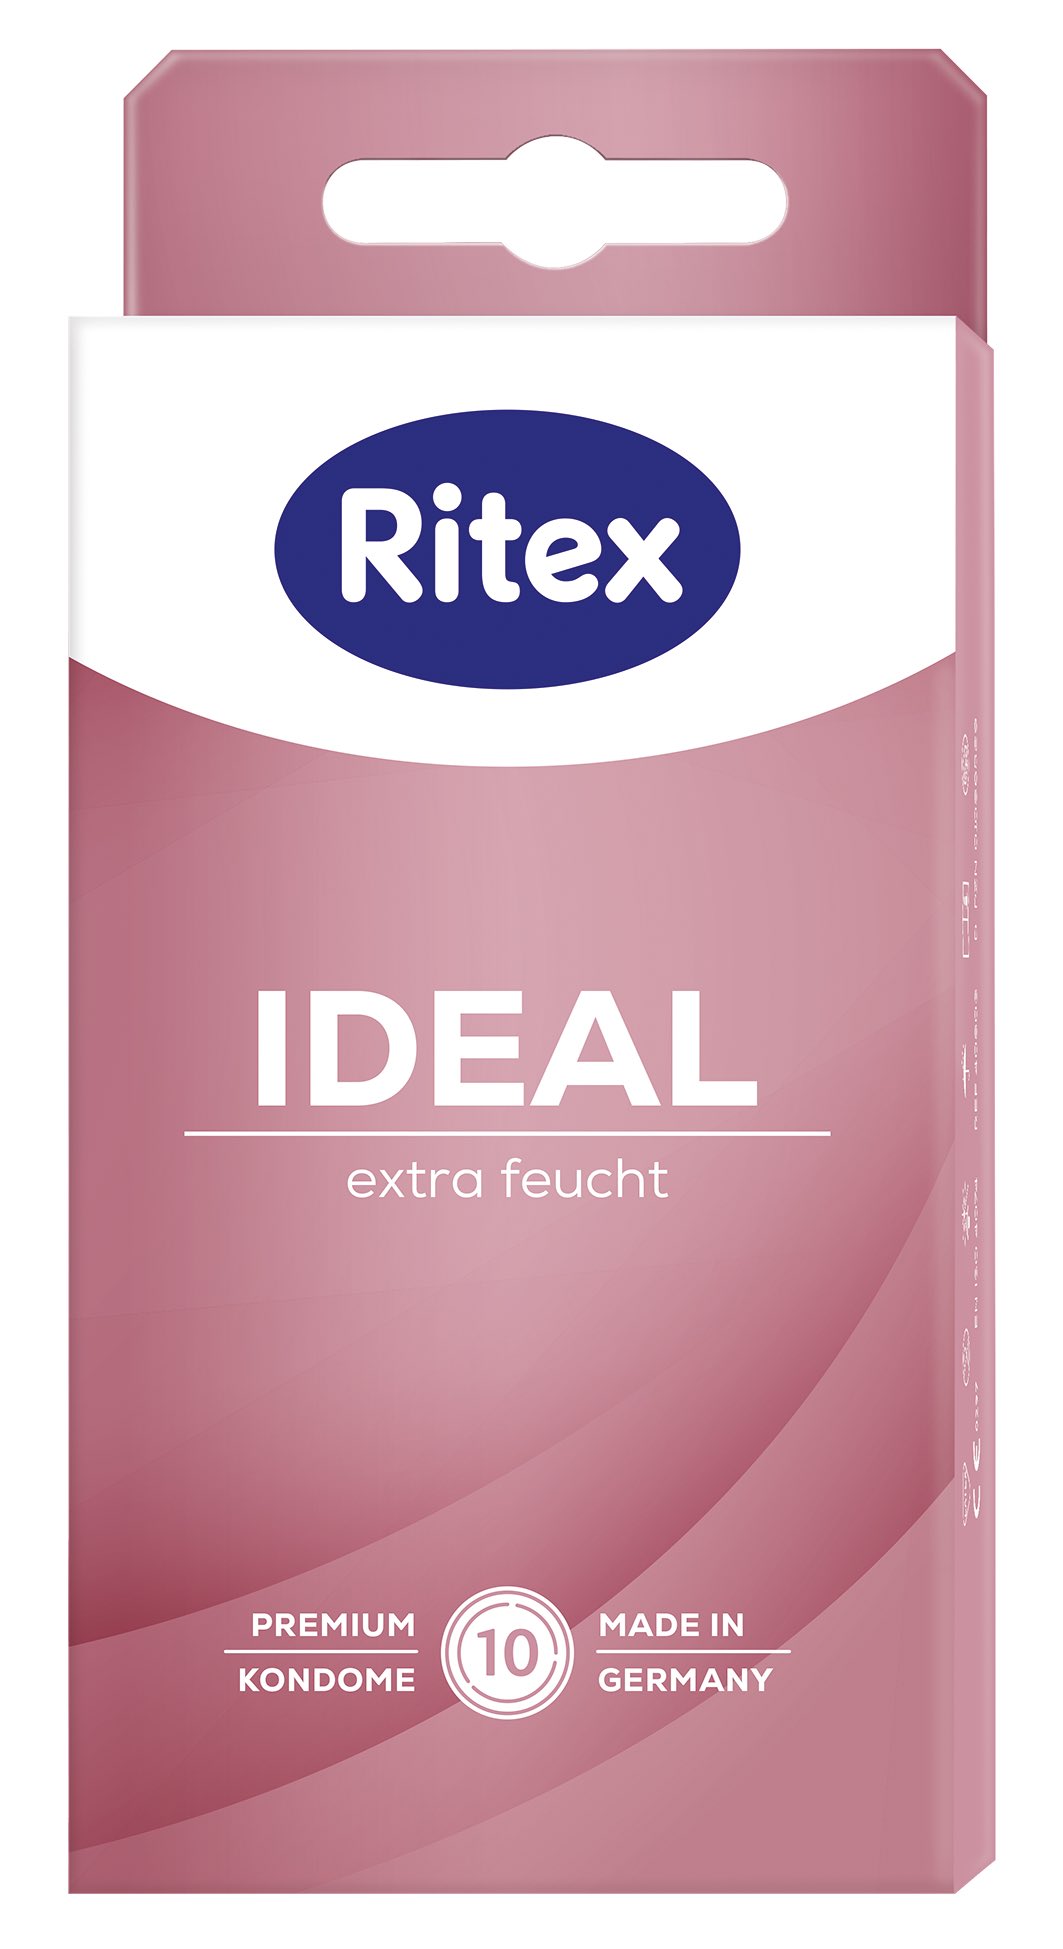 Ritex Ideal 10 Kondome